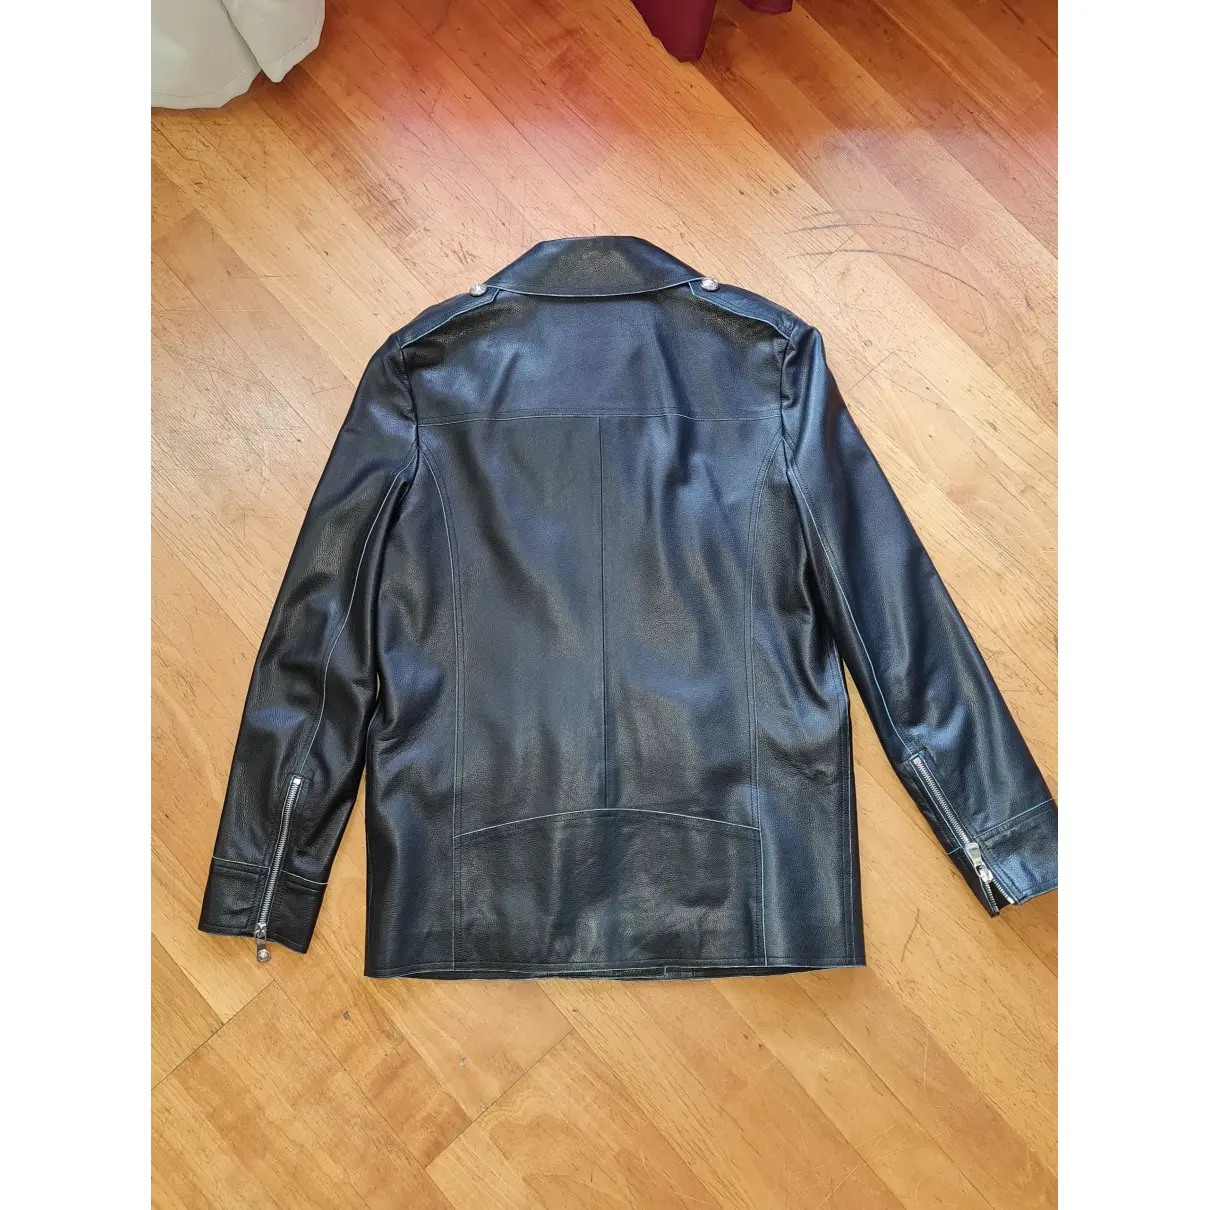 Buy Versus Leather short vest online